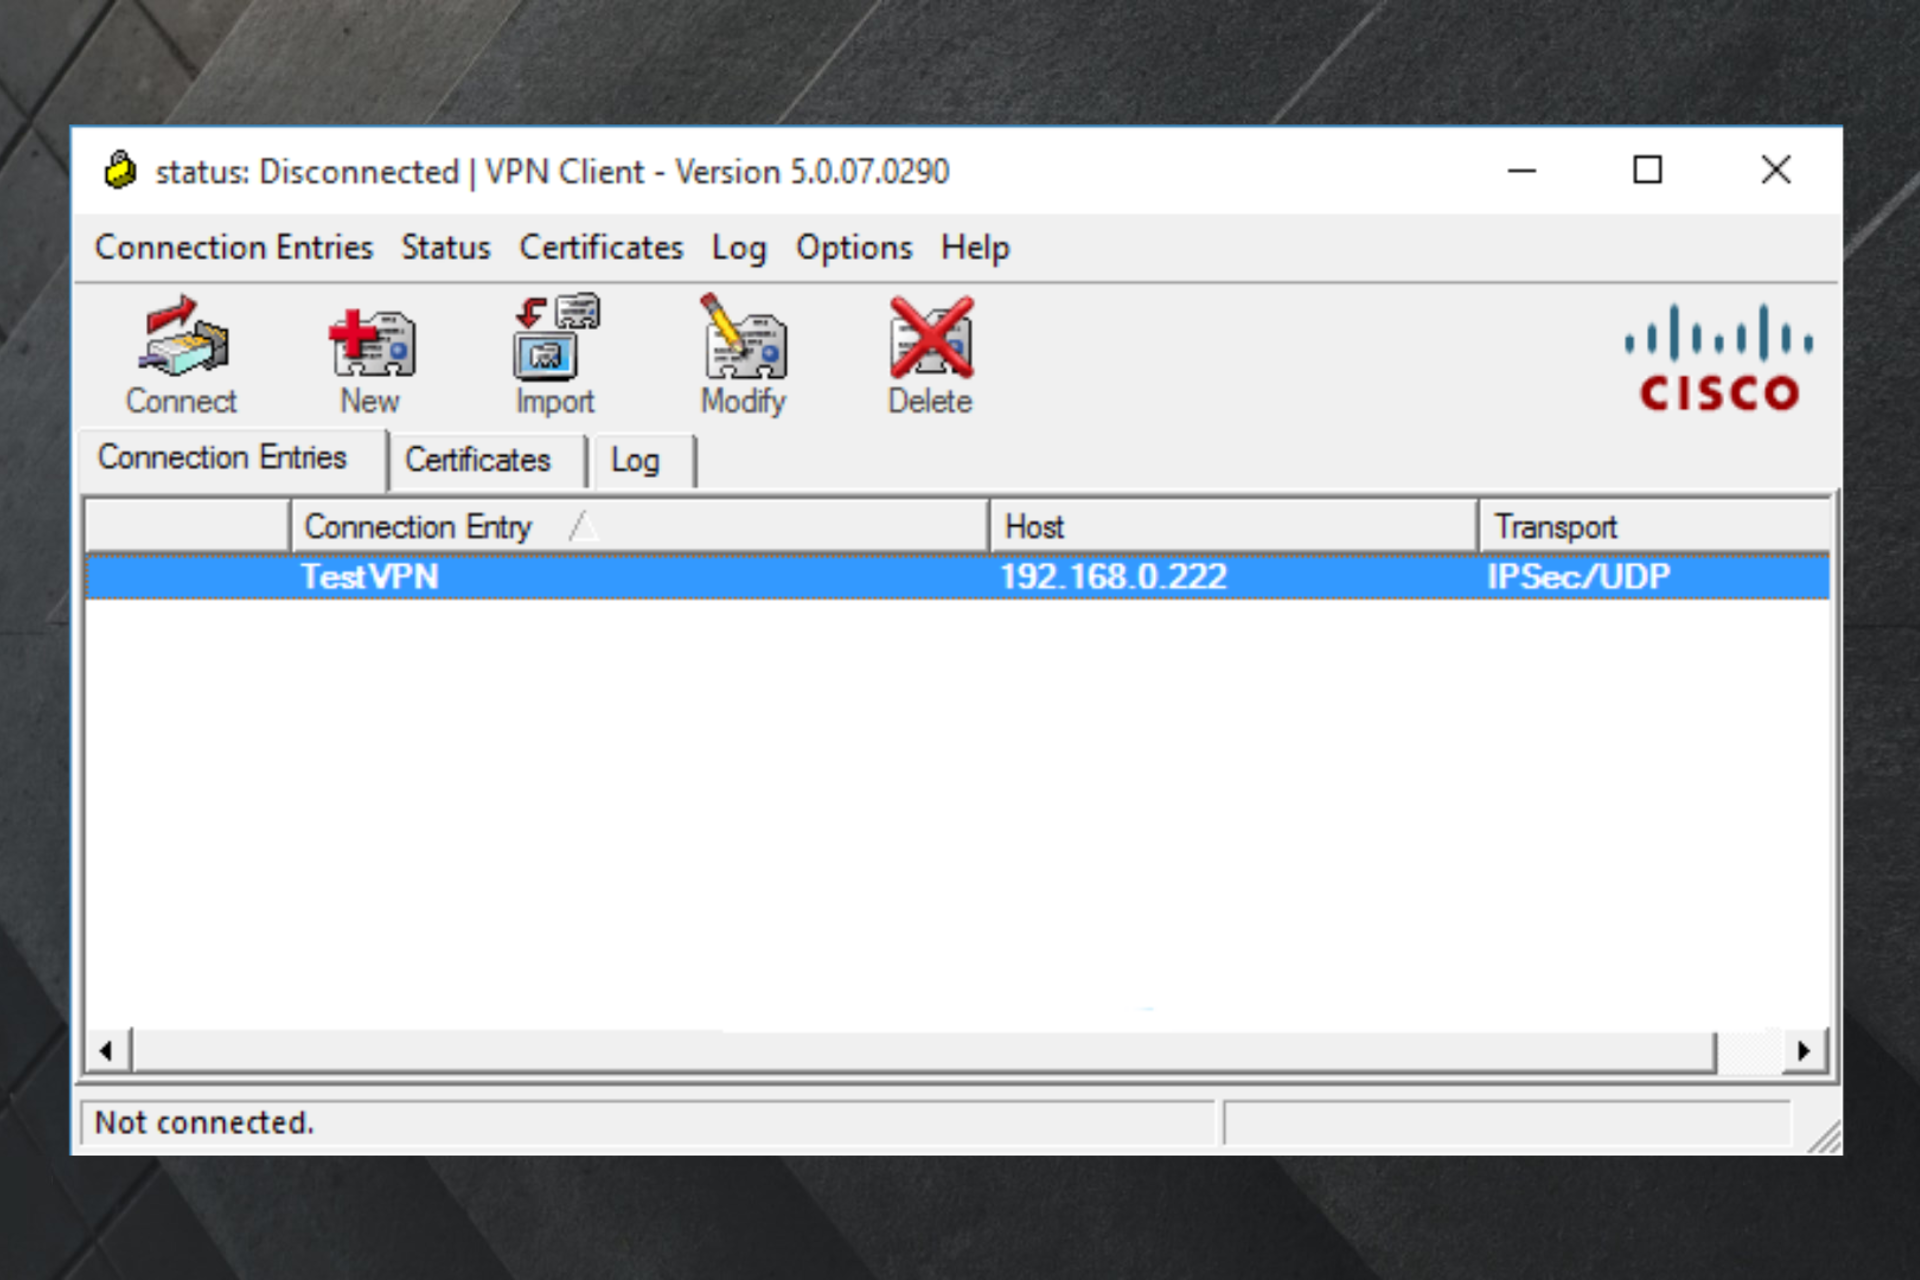 cisco vpn client windows 8.1 problem solving